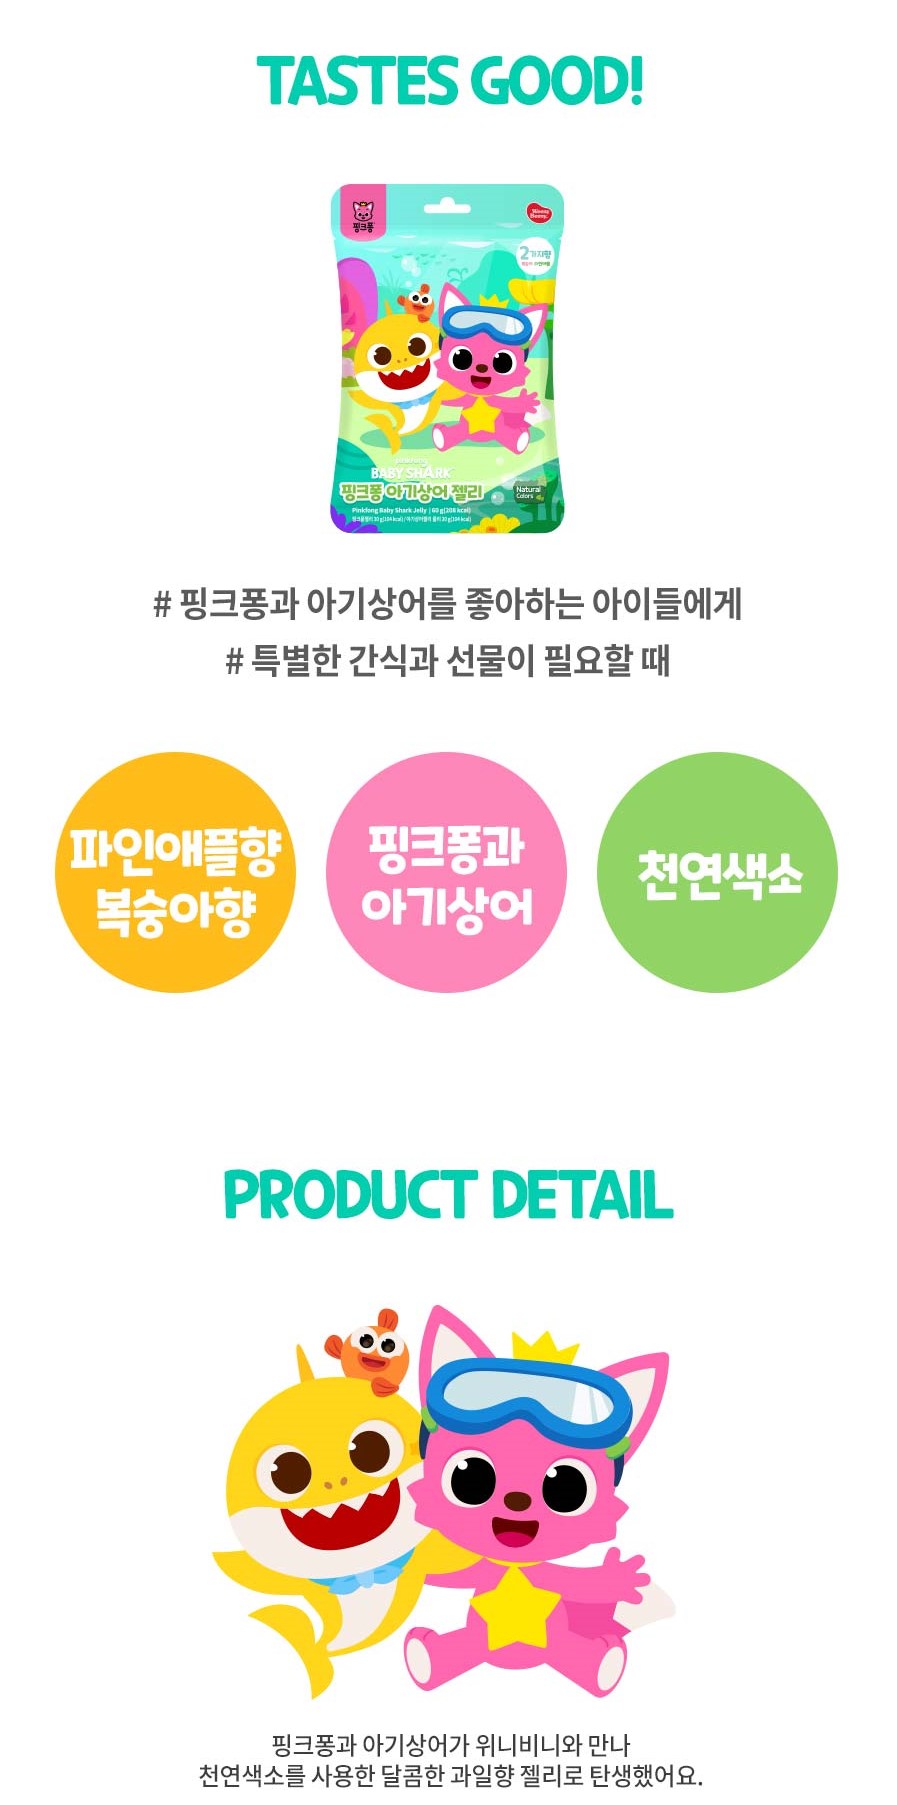 韓國食品-[위니비니] 핑크퐁 젤리[아기상어] 60g